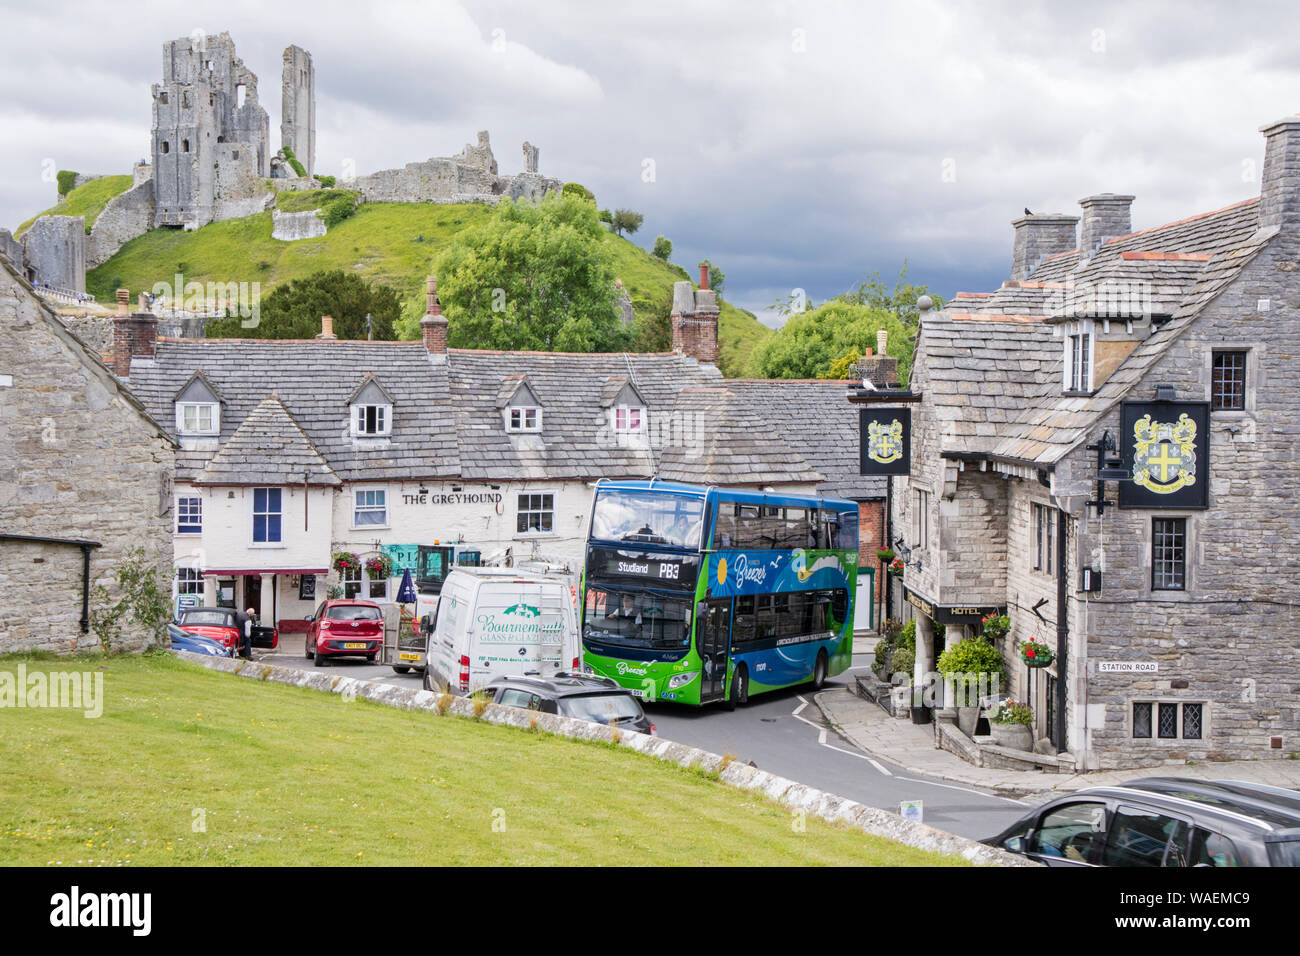 Le trafic lourd dans la destination touristique populaire de Corfe Castle un village pittoresque dans le Dorset, Angleterre, RU Banque D'Images